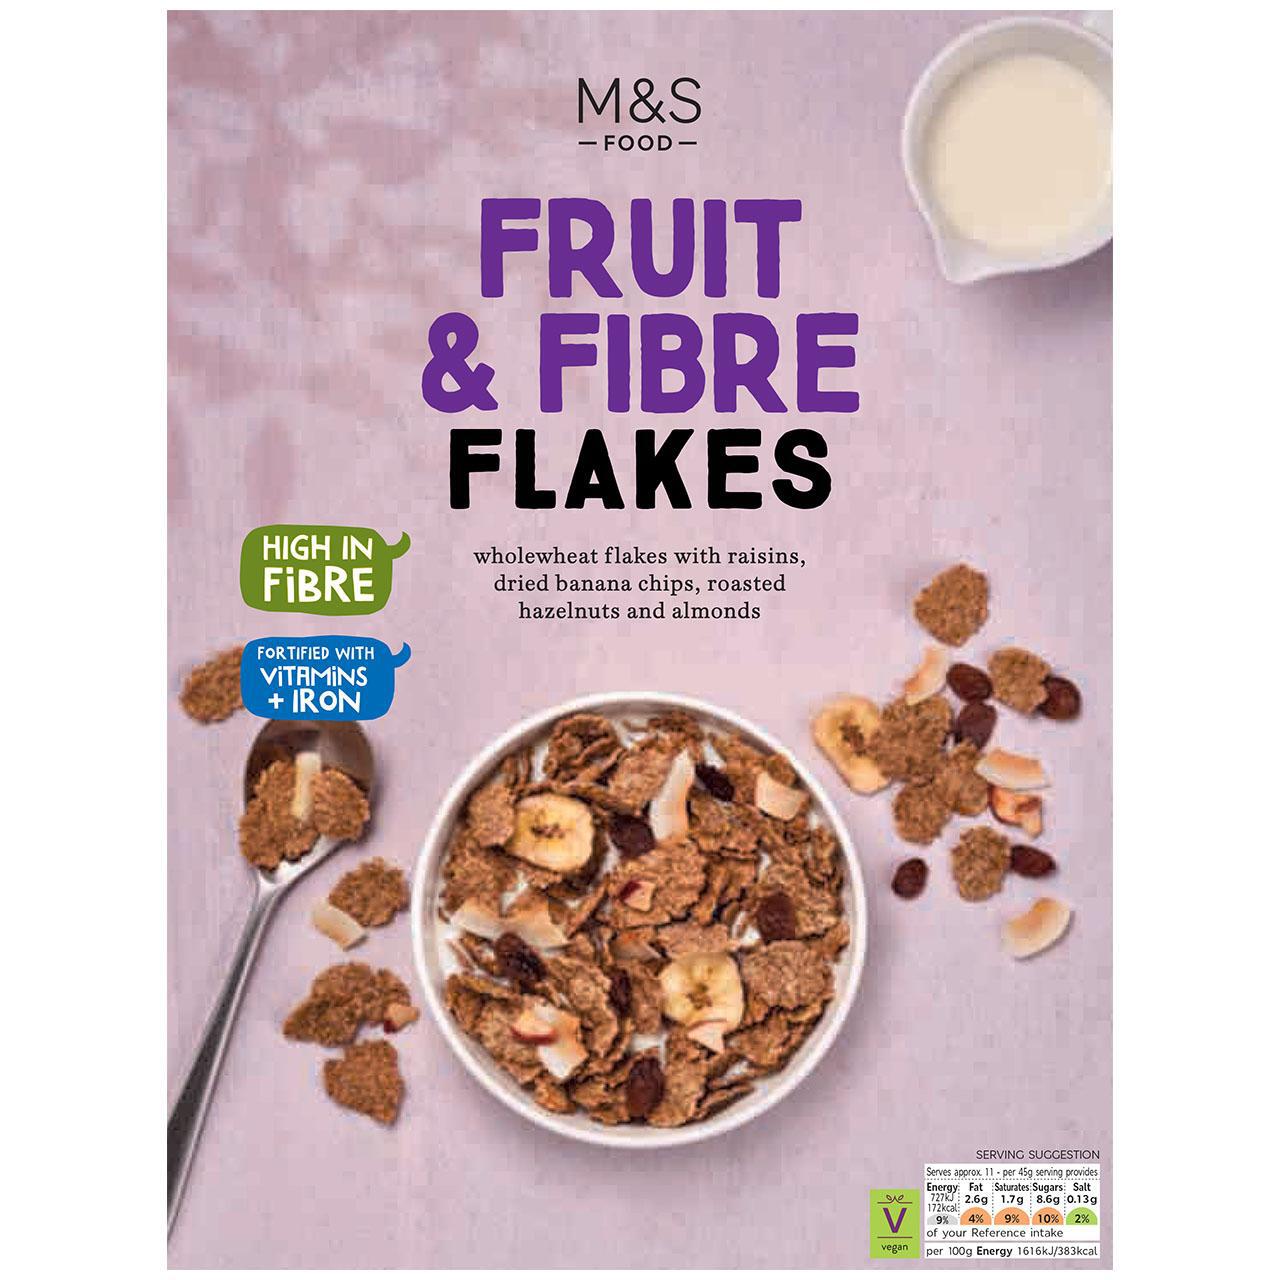 M&S Fruit & Fibre Flakes 500g